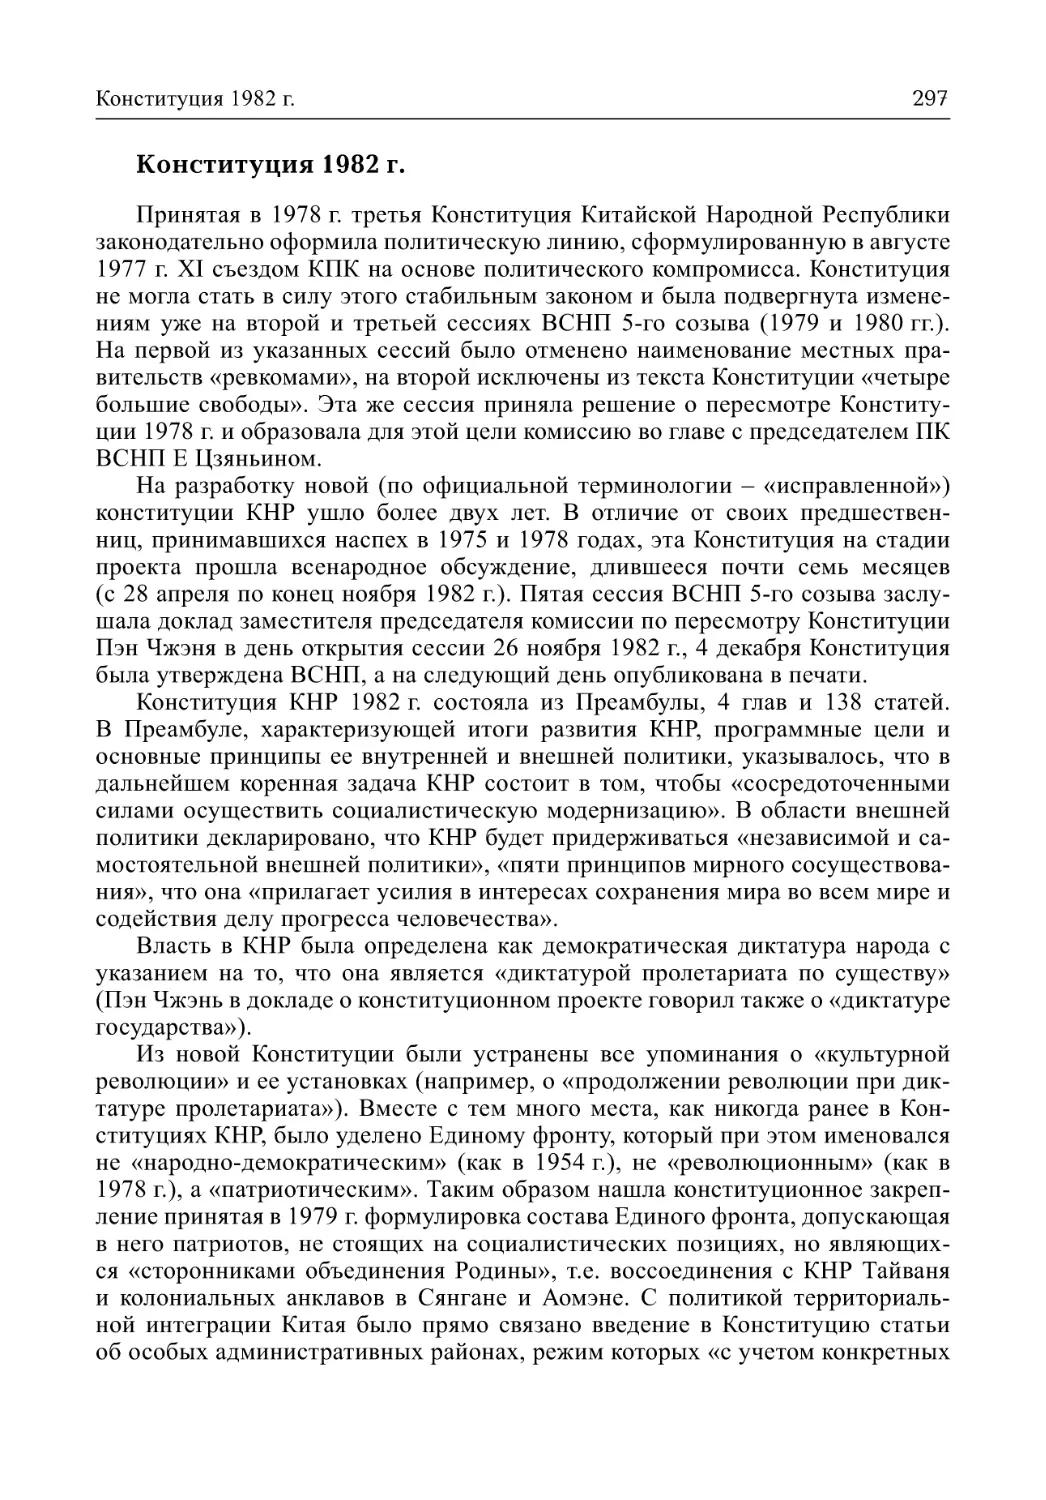 Конституция 1982 г. (Л.М. Гудошников)